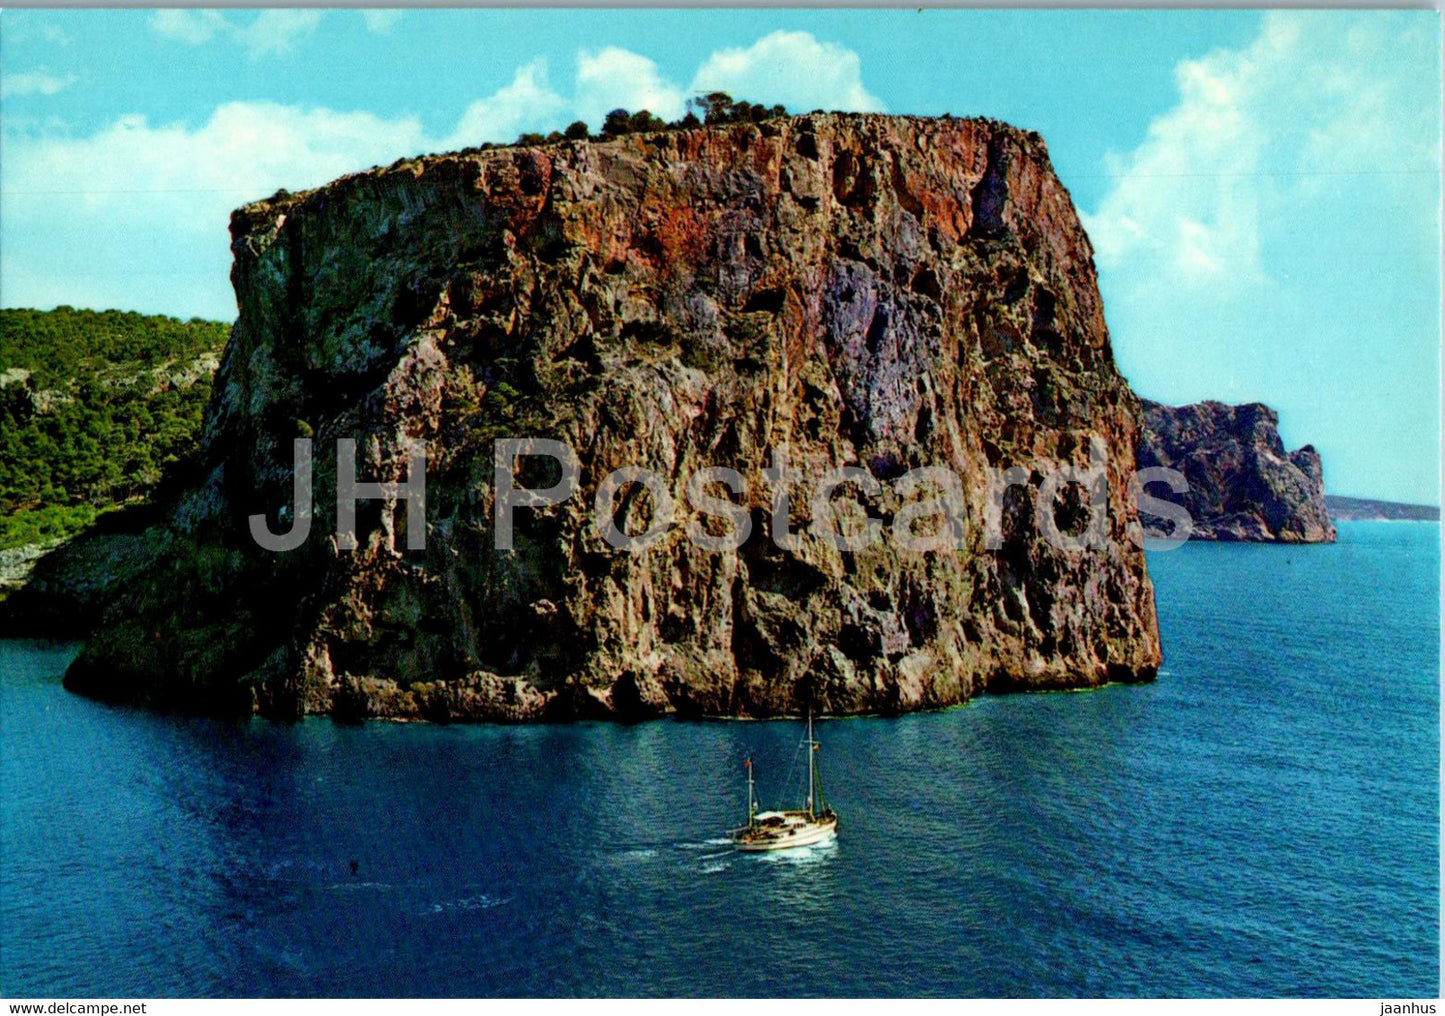 Camp de Mar - Detalle de la costa desde el aire - Mallorca - 3003 - Spain - unused - JH Postcards